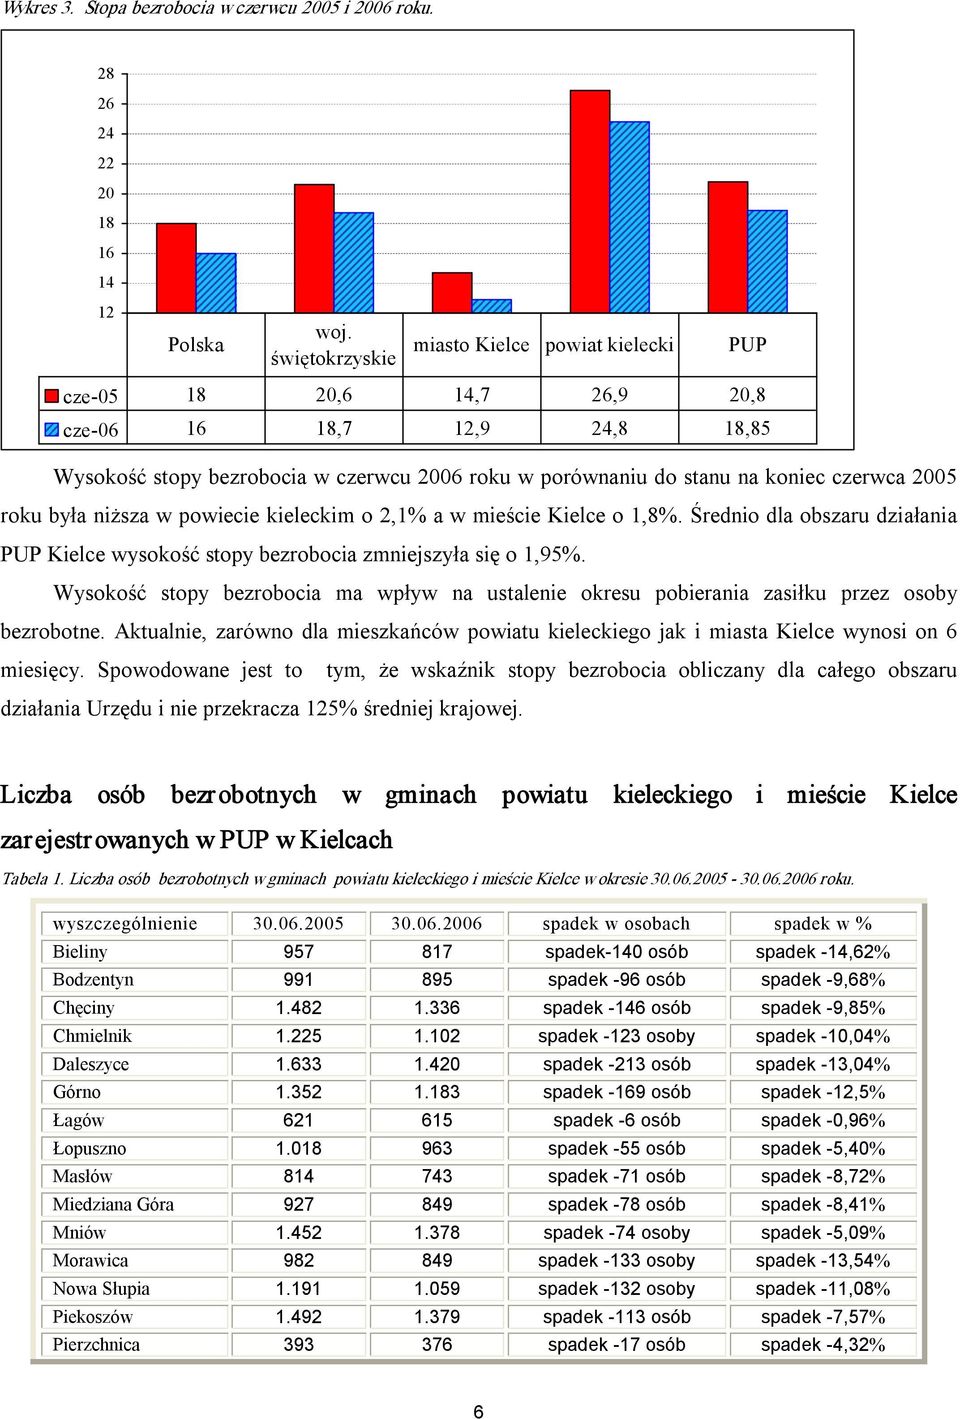 2005 roku była niższa w powiecie kieleckim o 2,1% a w mieście Kielce o 1,8%. Średnio dla obszaru działania PUP Kielce wysokość stopy bezrobocia zmniejszyła się o 1,95%.